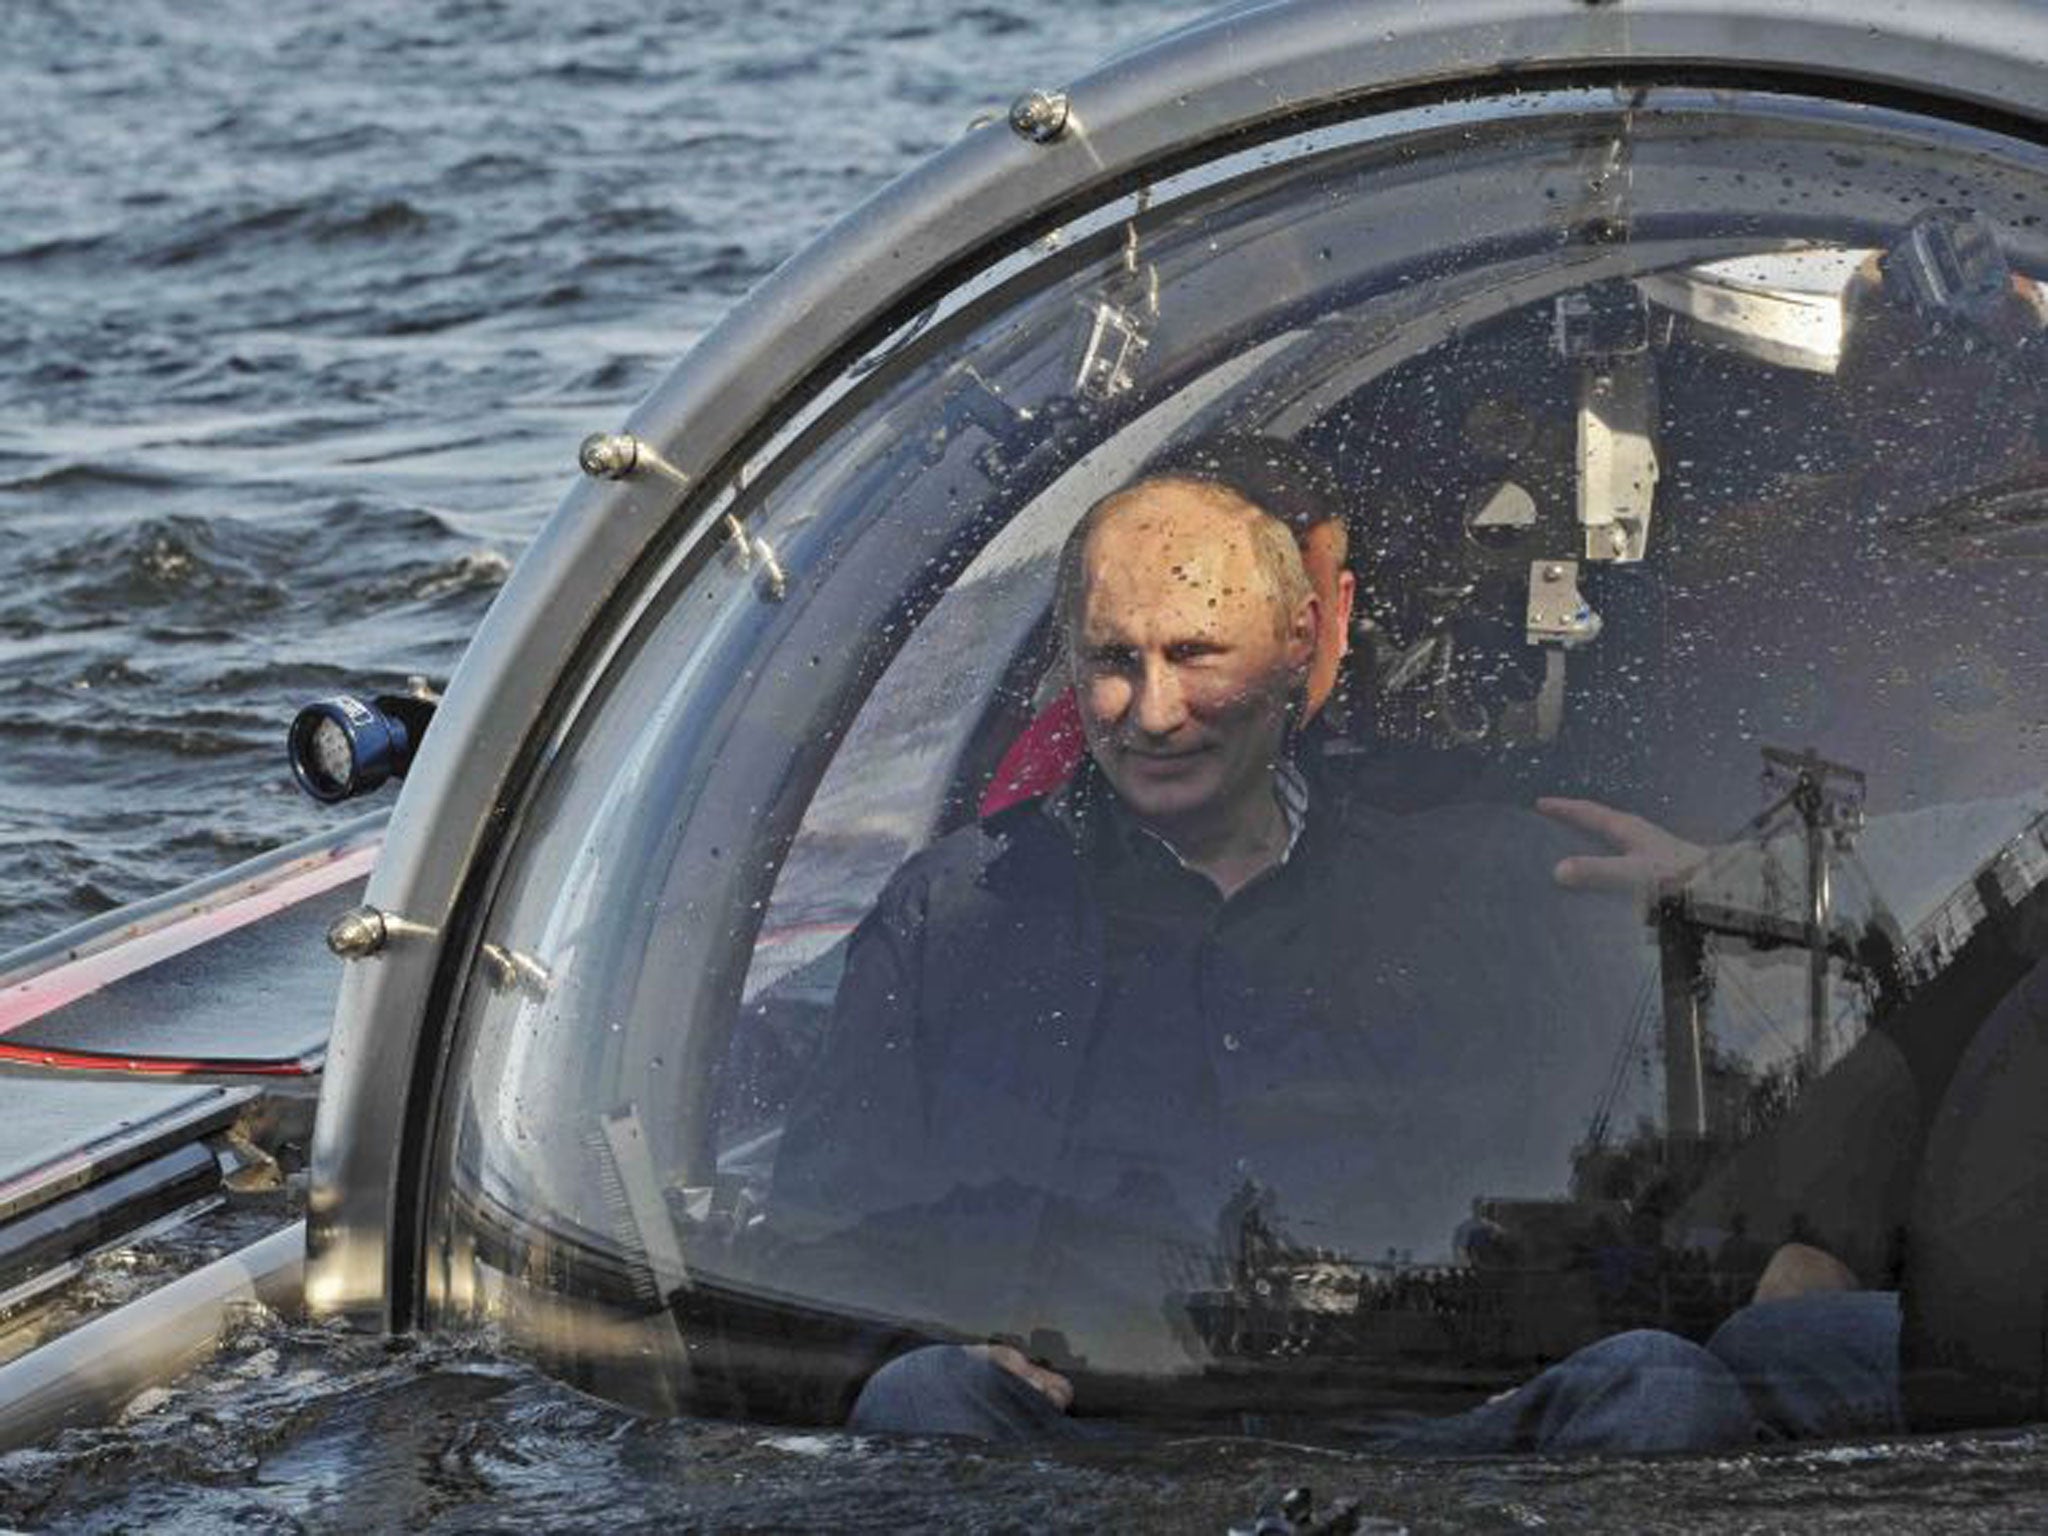 Vladamir Putin in his aquatic vehicle